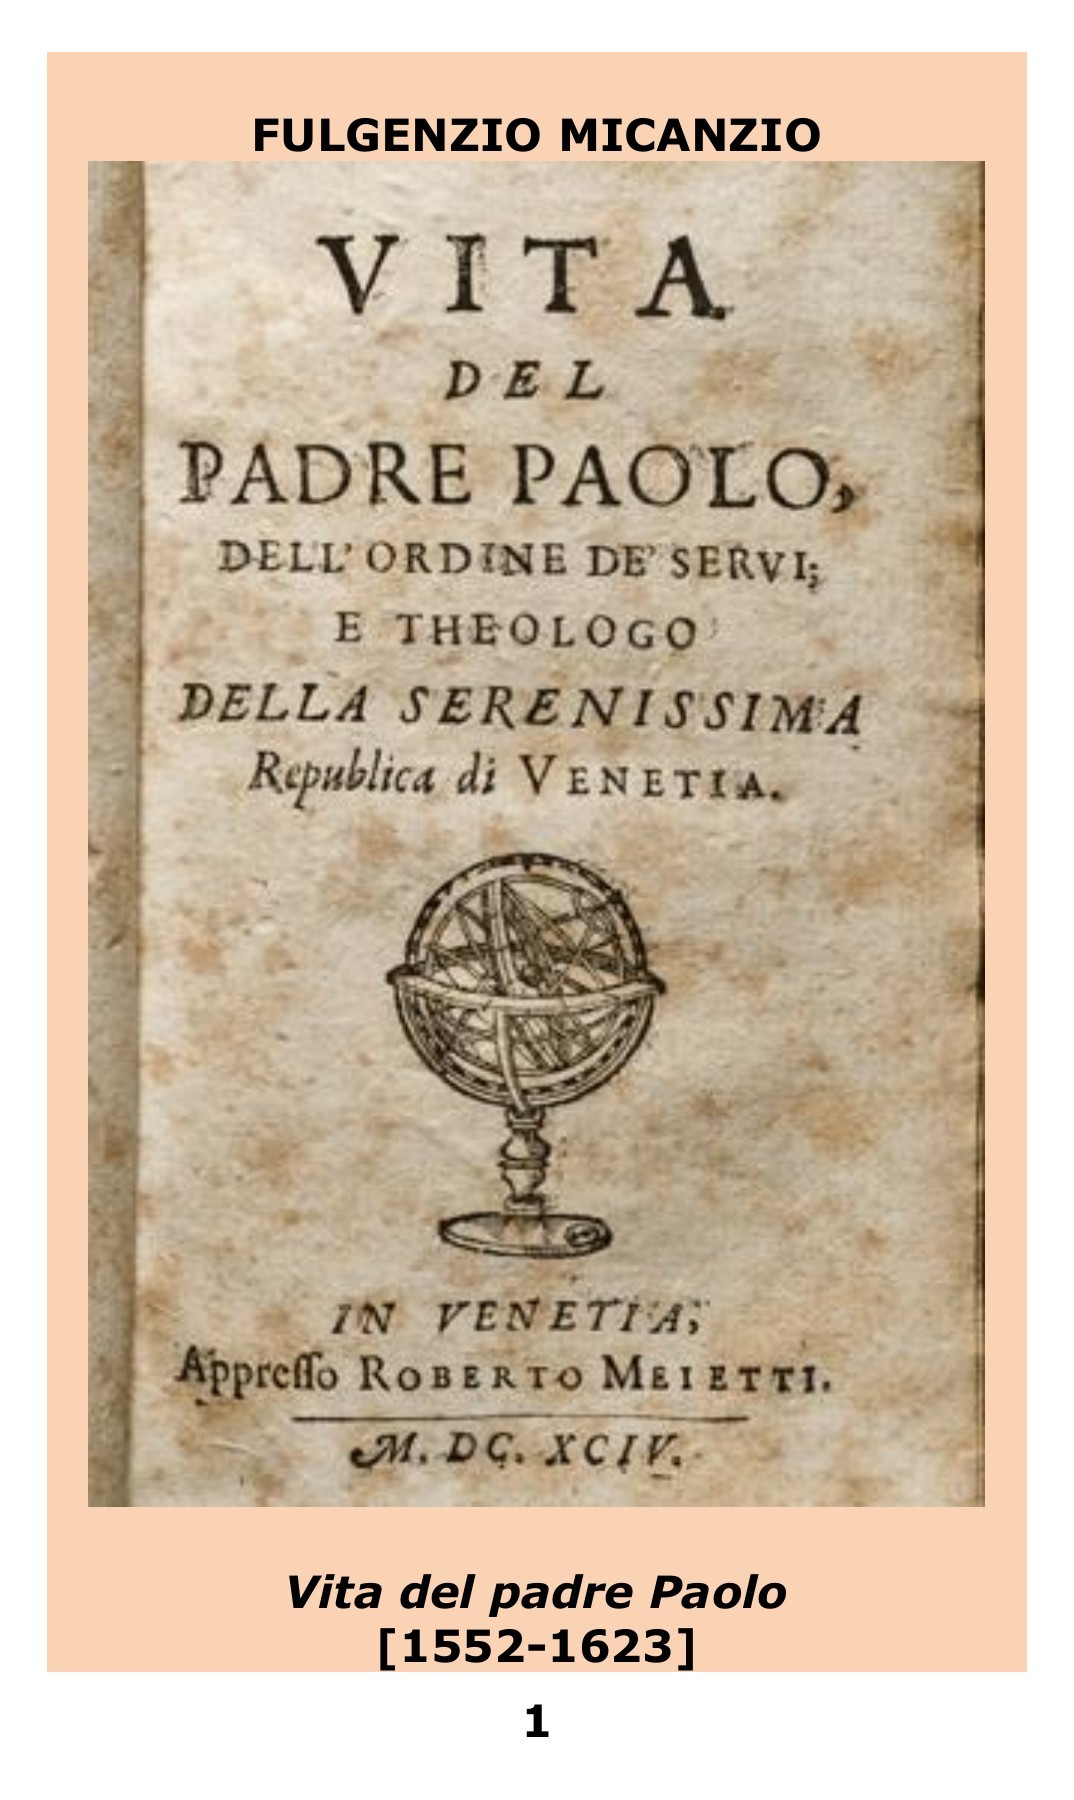 Vita del padre Paolo, dell' ordine de' Servi, e theologo della serenissima Republica di Venetia: 1